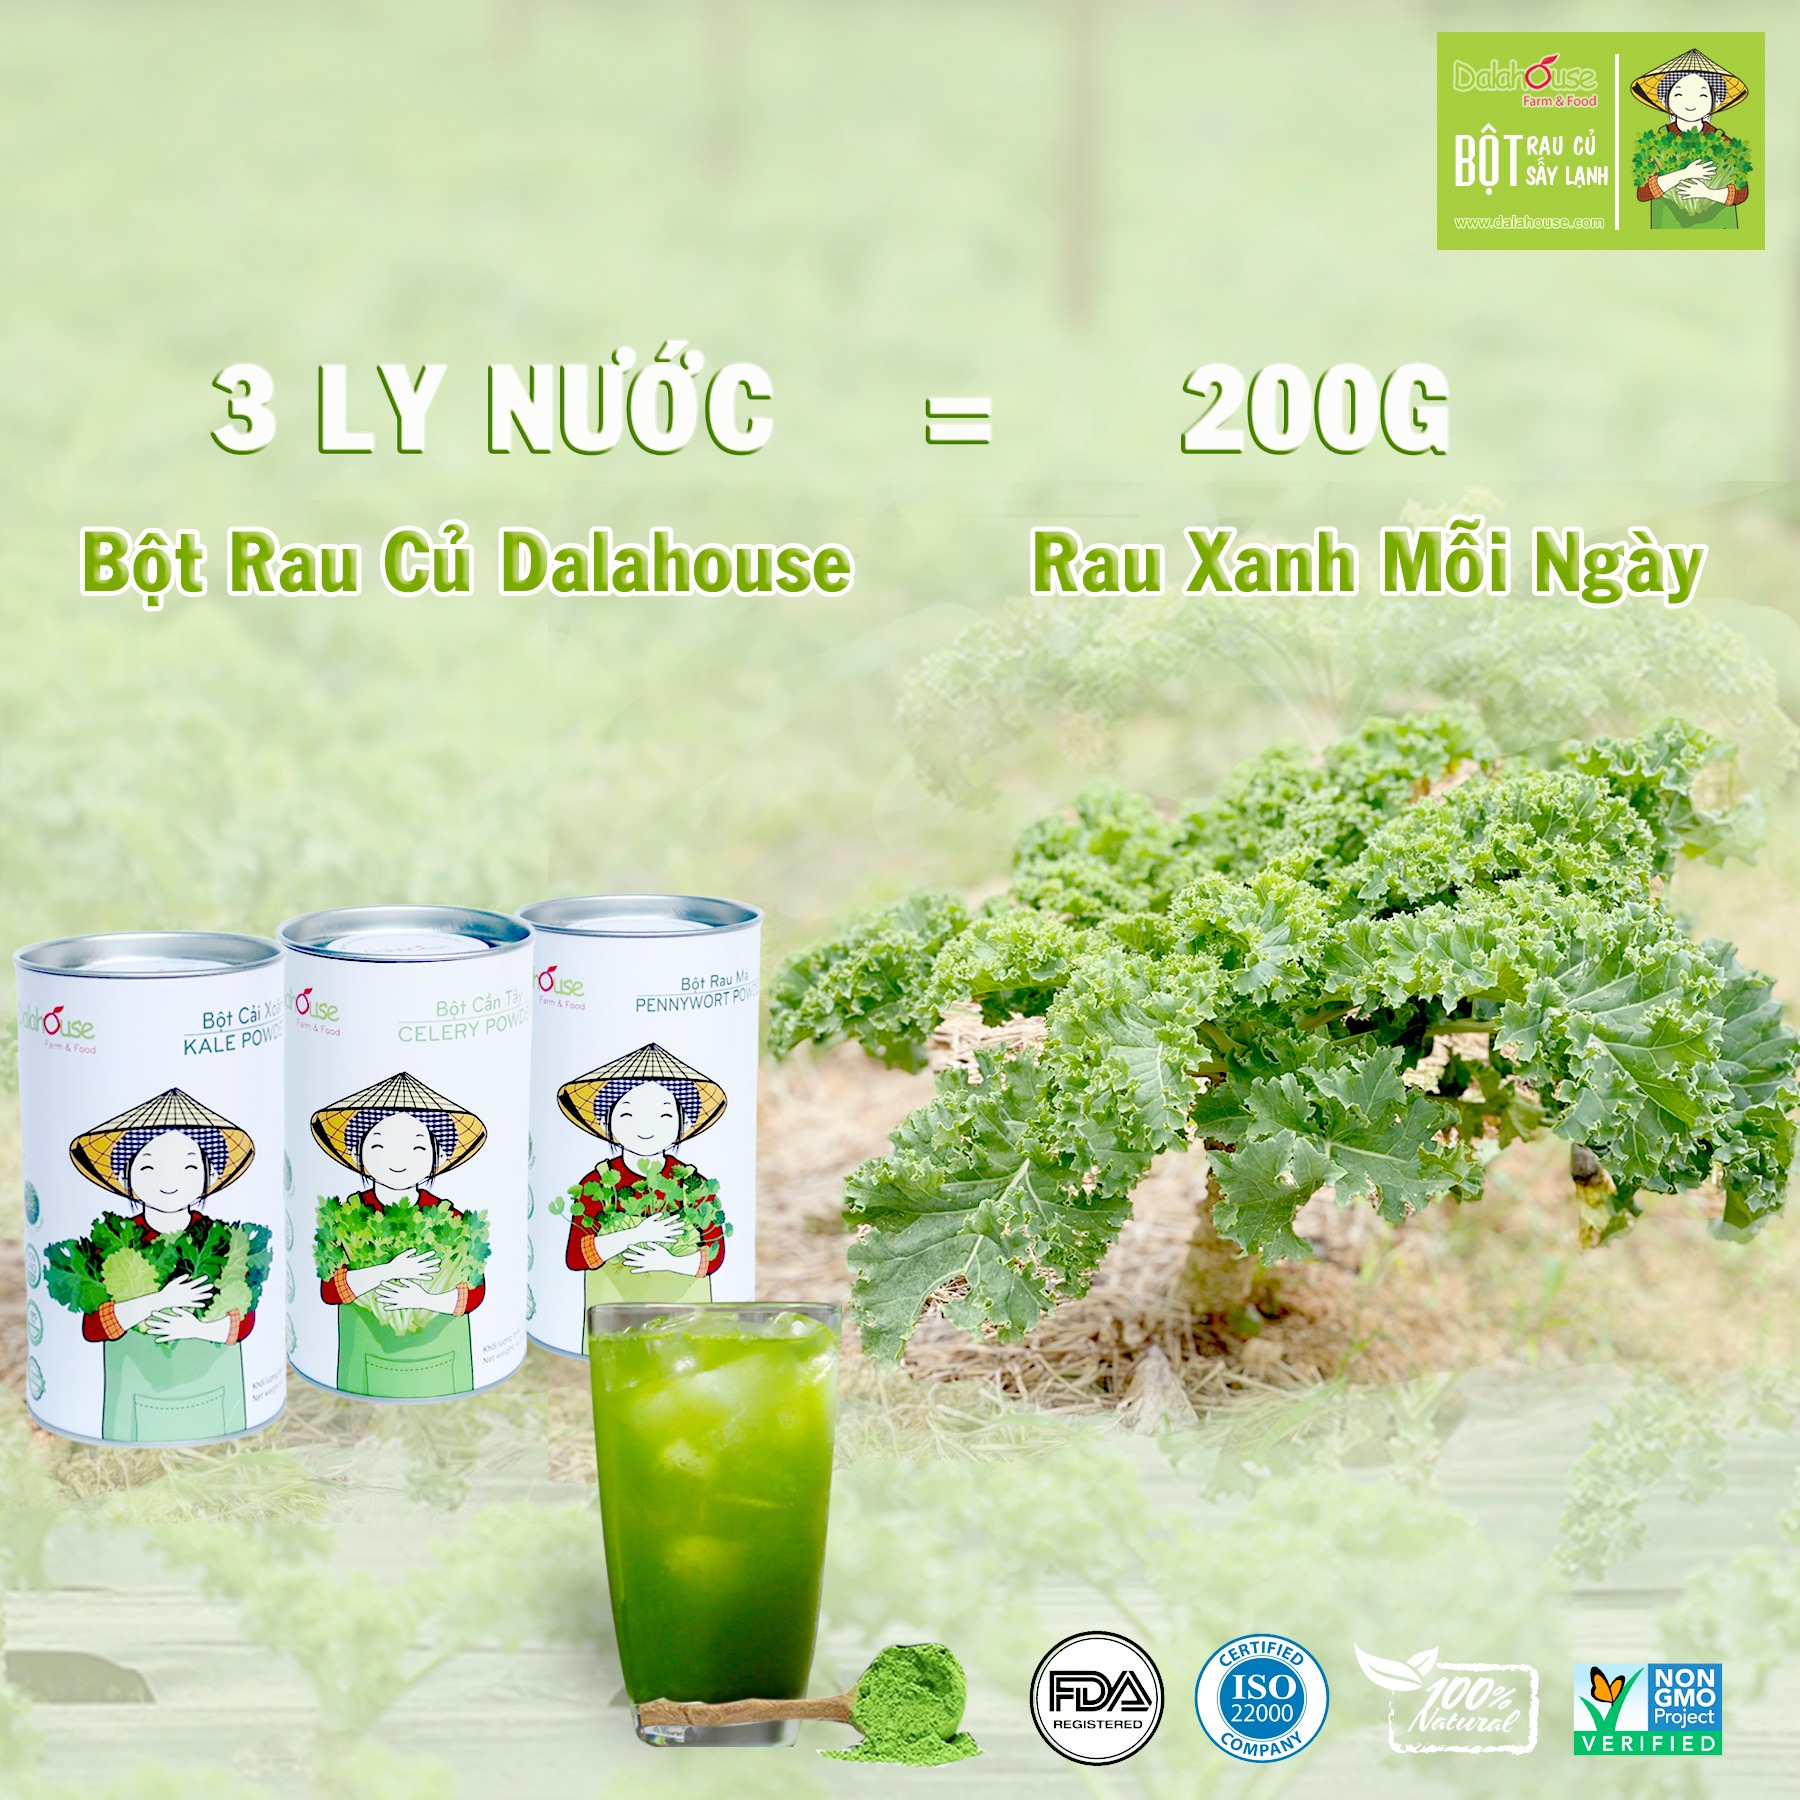 Bột cải xoăn hữu cơ sấy lạnh Dalahouse - Hộp 20 gói 3gr tiện lợi - Đào thải độc tố, chống ô xy hóa, bổ sung can xi hữu cơ cho cơ thể